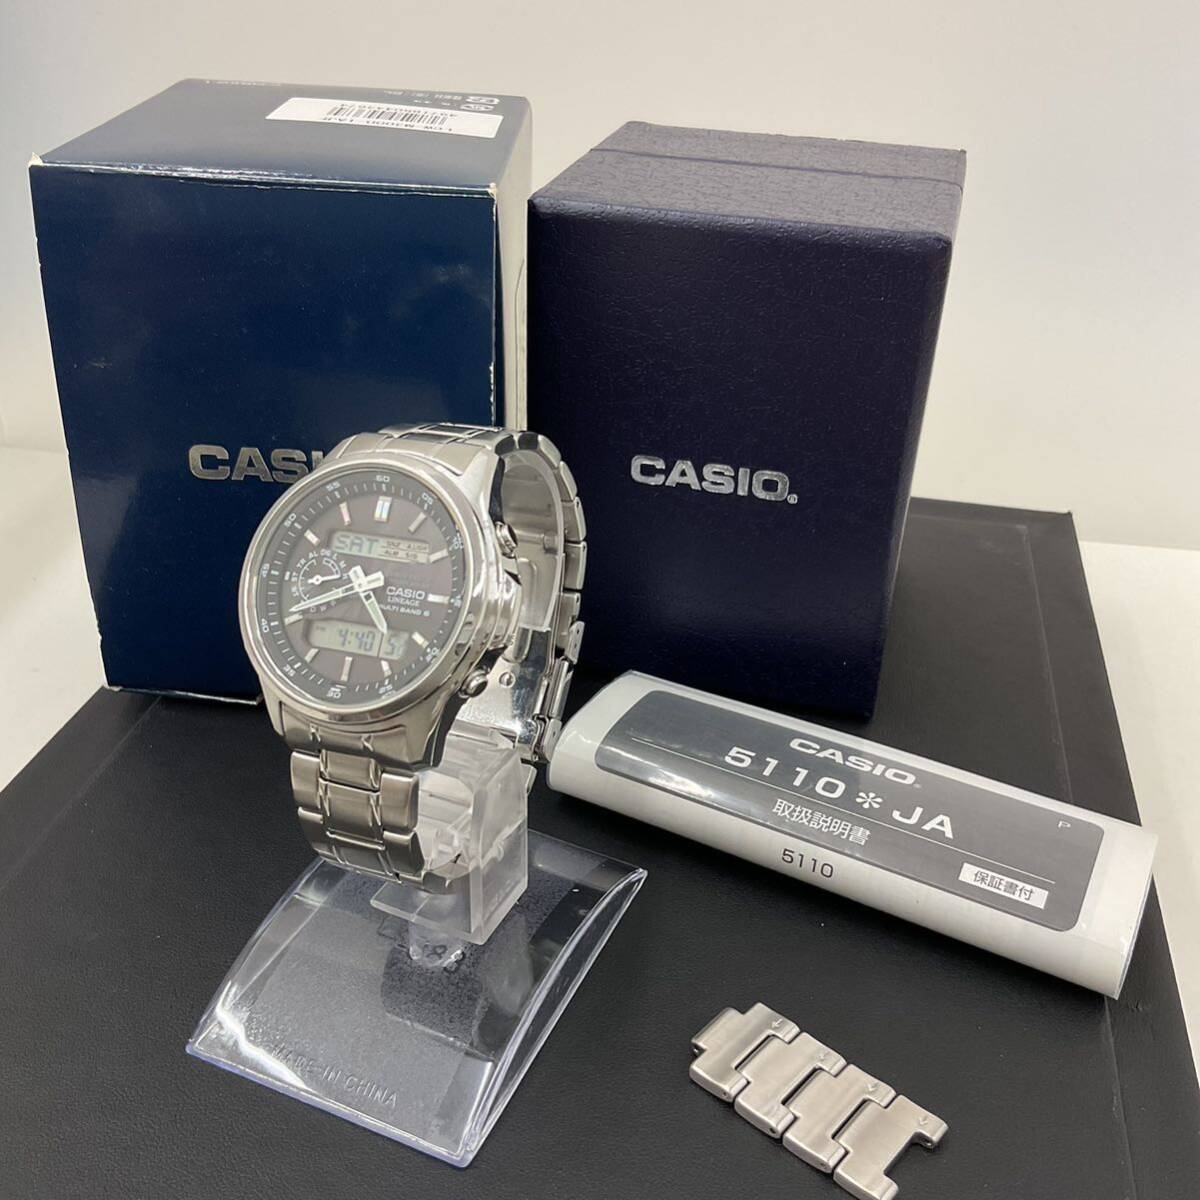 3195 CASIO カシオ LINEAGE リニエージ MULTI BAND 6 腕時計 LCW-M300 電波ソーラー 電波時計 稼動品の画像1